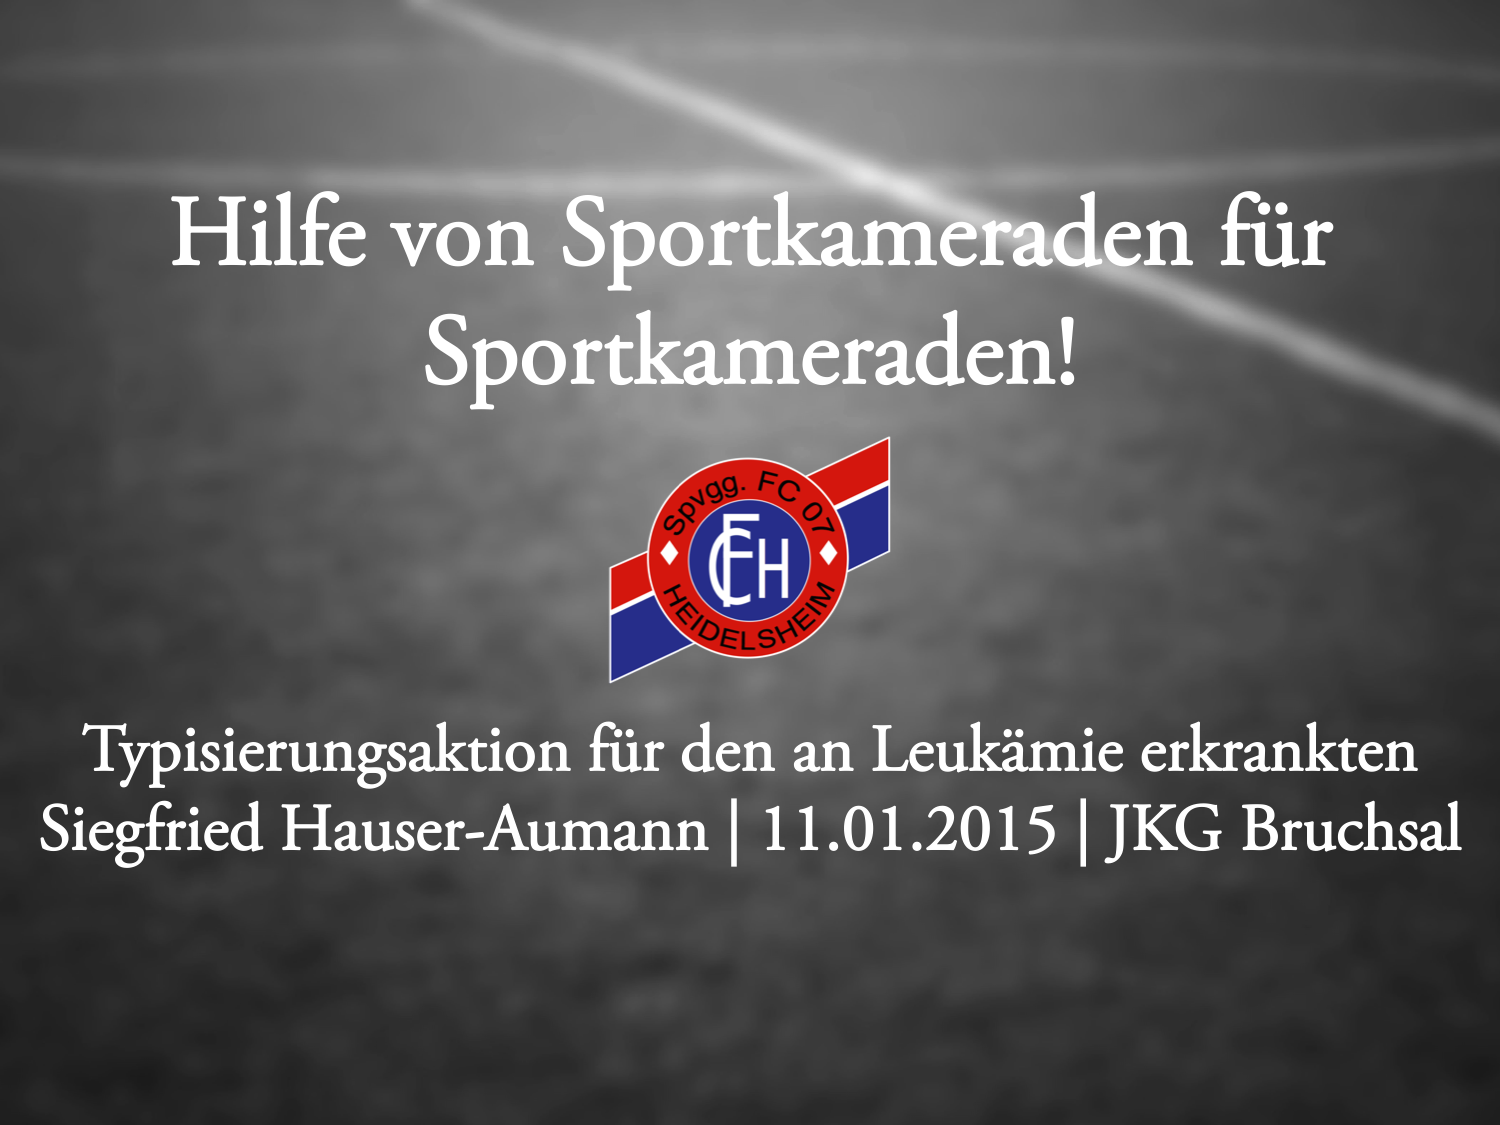 You are currently viewing Hilfe von Sportkameraden für Sportkameraden!